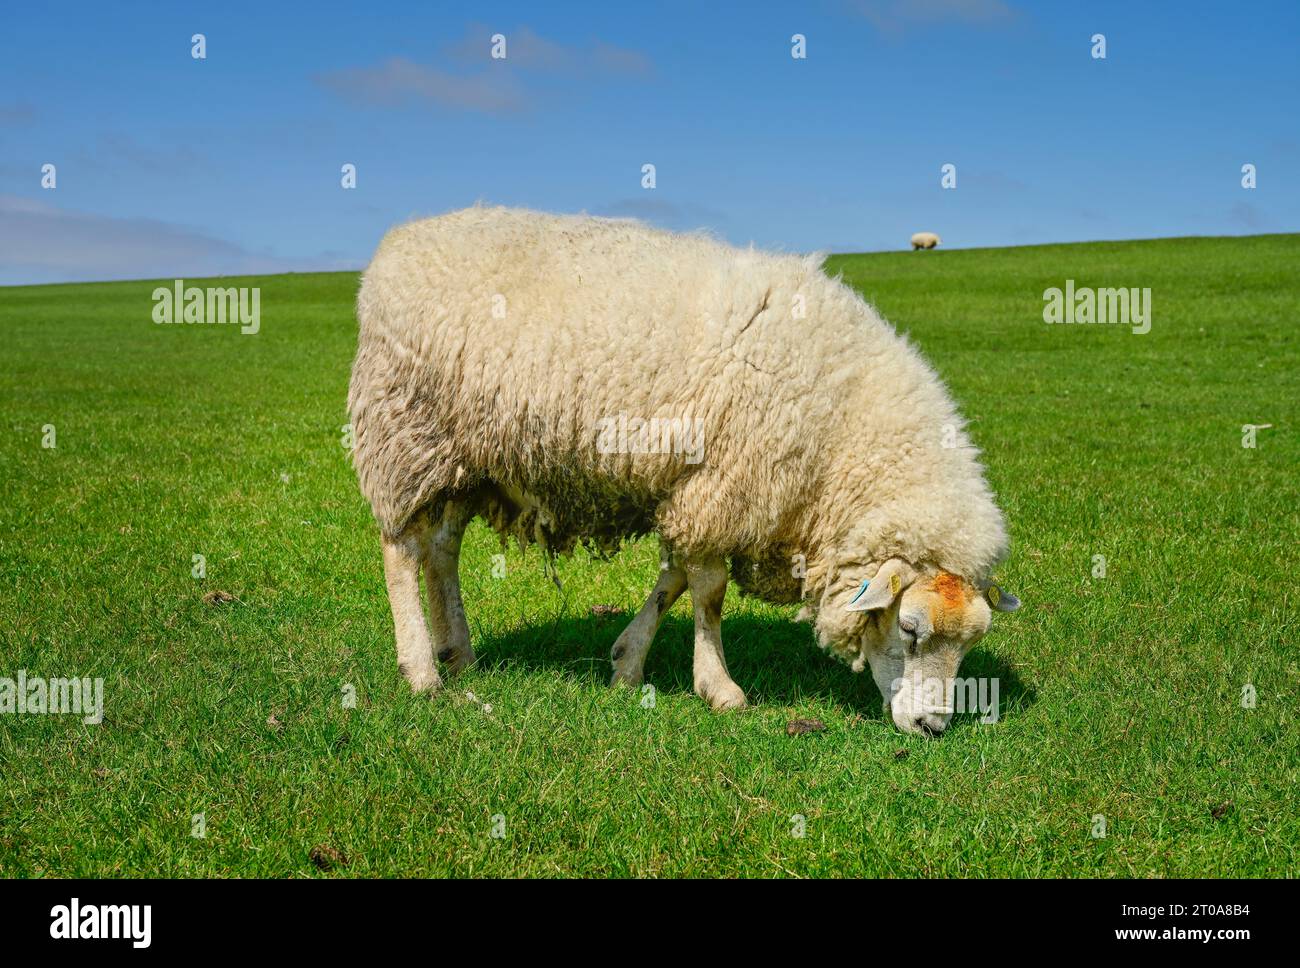 Schaf am Deich nahe Achsum, Sylt, Schleswig-Holstein, Deutschland Stock Photo